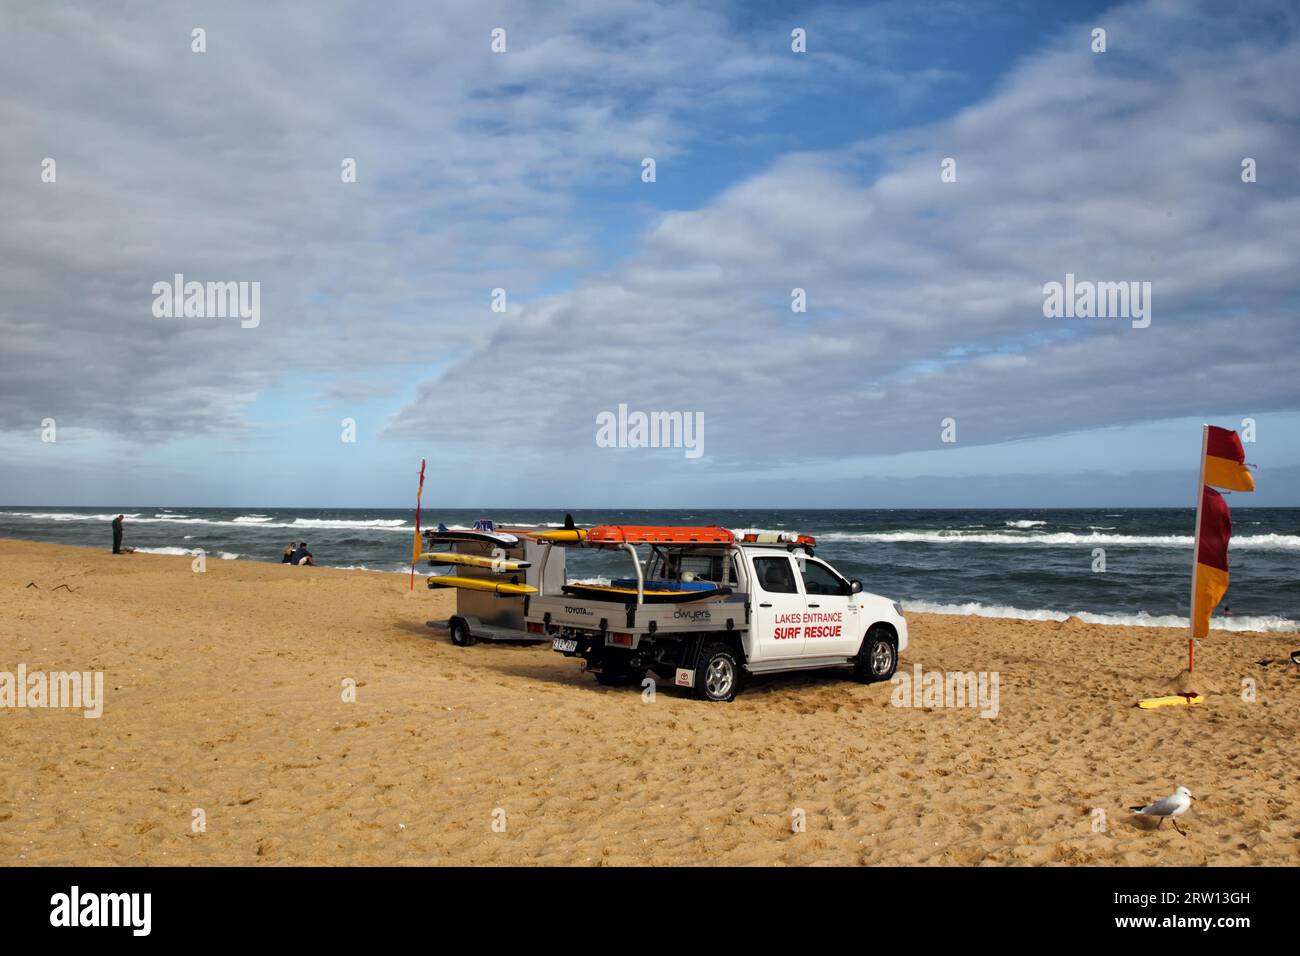 Surf Life Saving Club voiture sur la plage Lakes Entrance, Victoria, Australie Banque D'Images